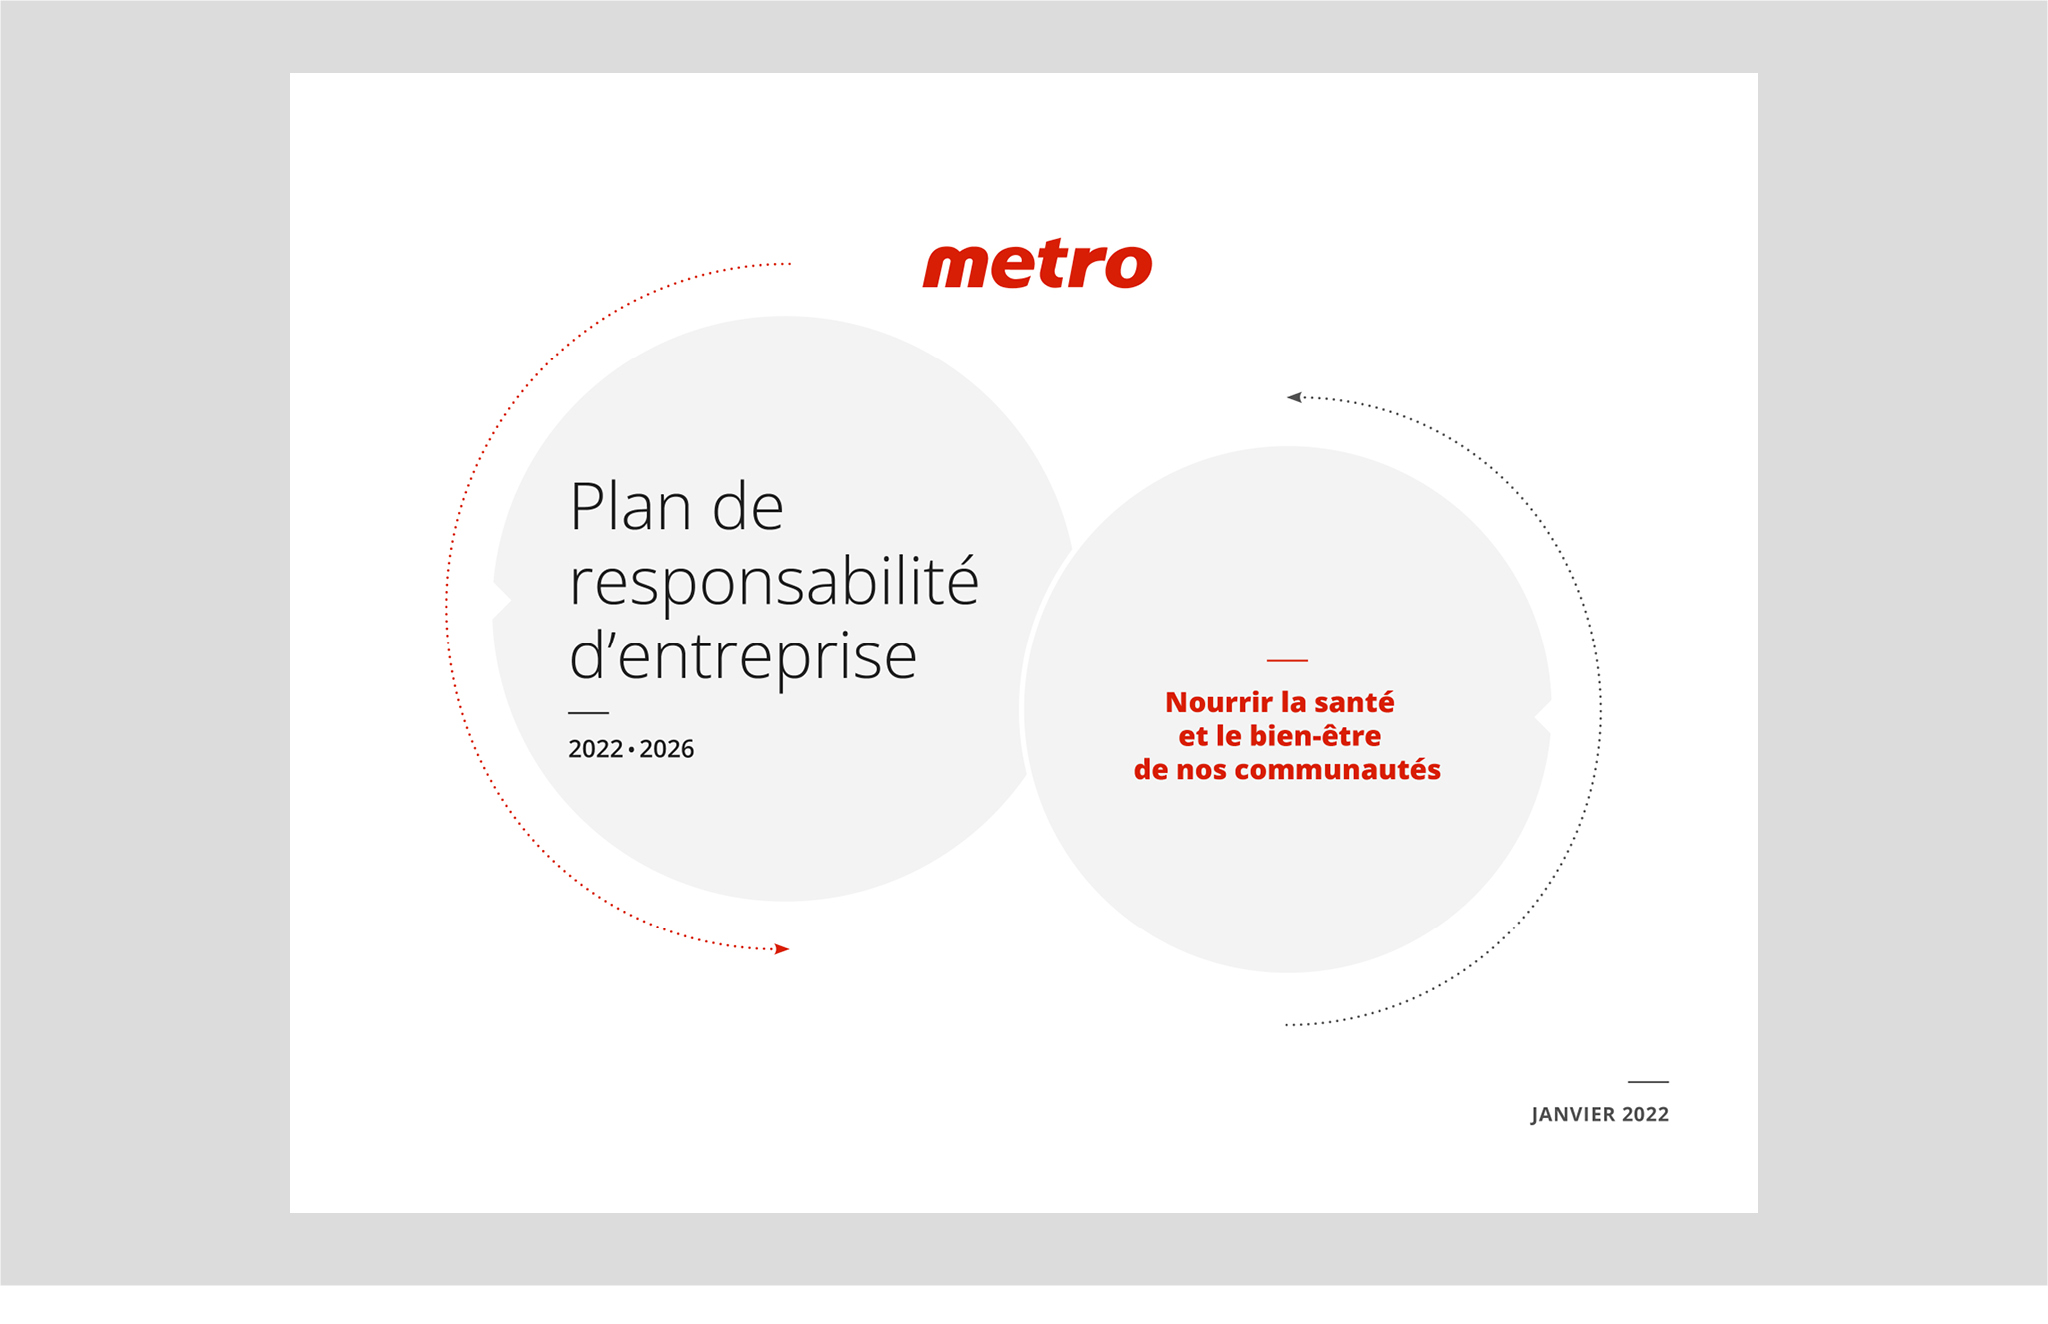 Plan de responsabilité d’entreprise 2022-2026 de Metro.